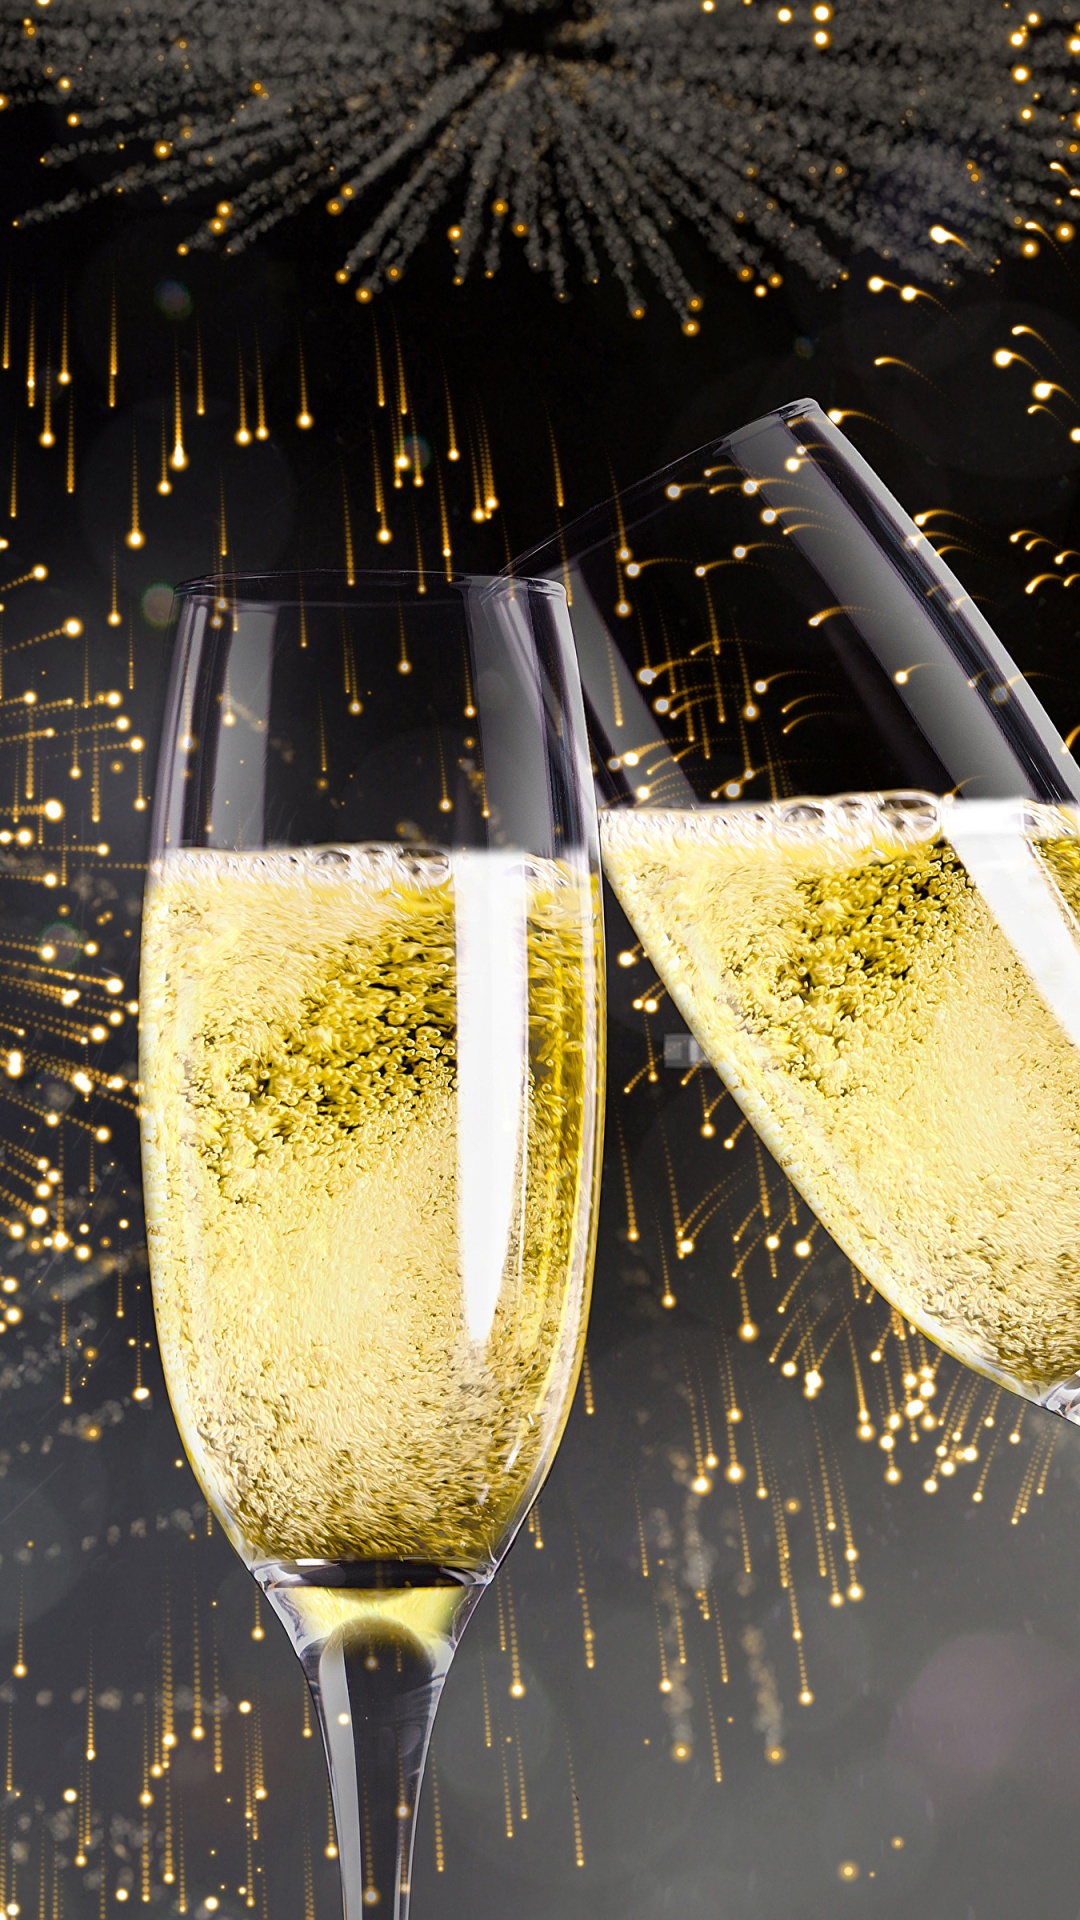 新年前夕, 香槟, 新的一年, 缔约方, 新年当天 壁纸 1080x1920 允许